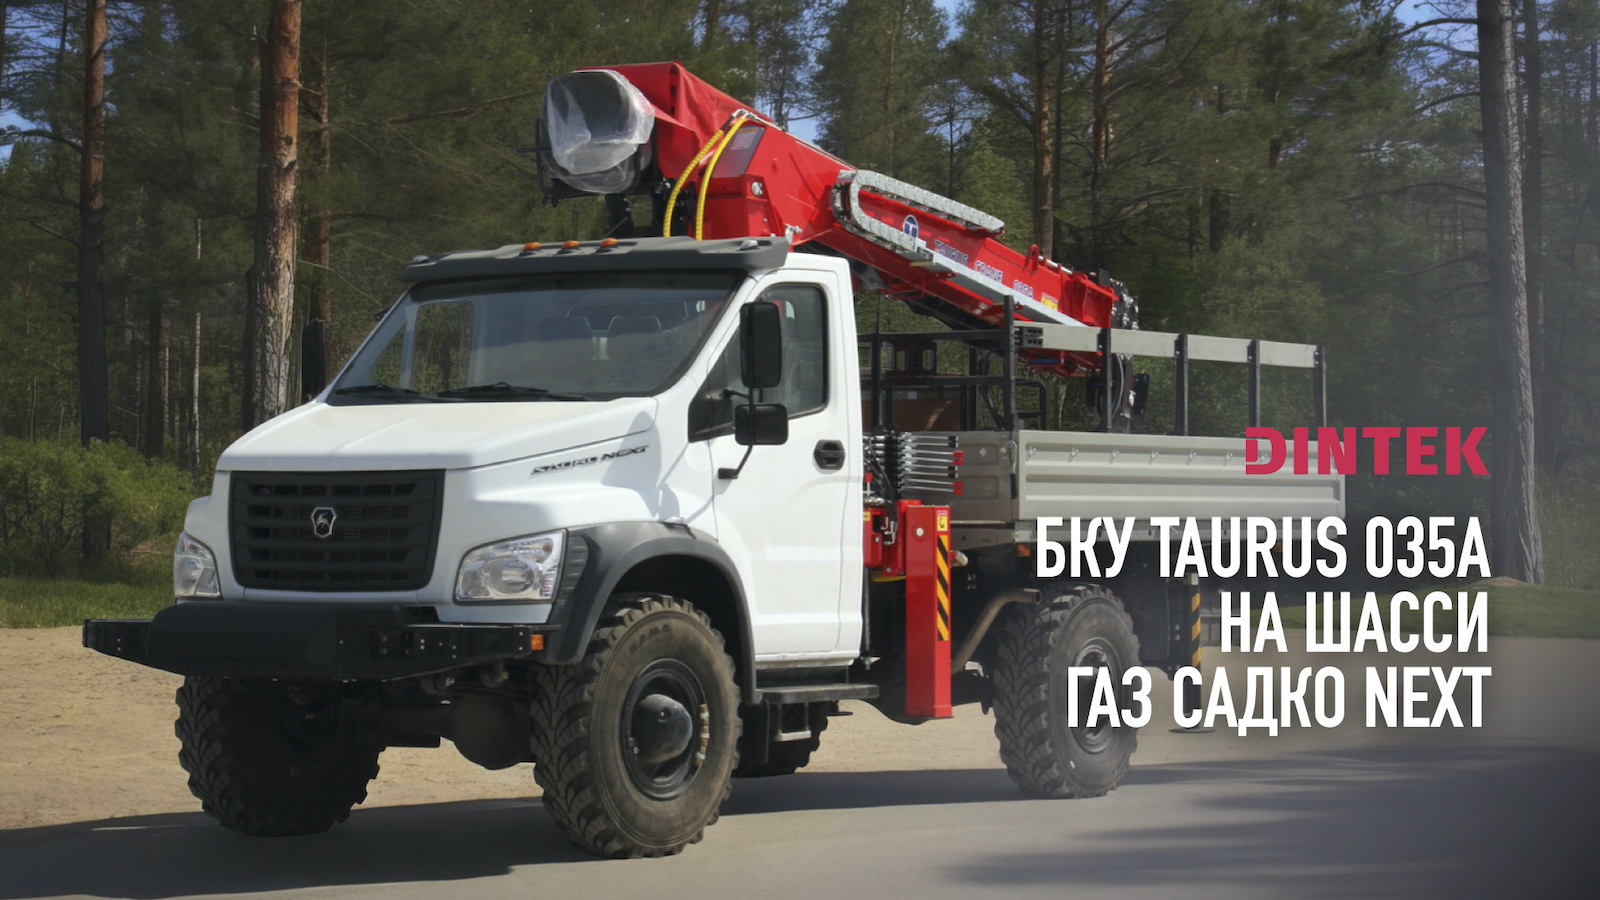 Бурильно крановая установка БКУ Taurus 035A на шасси ГАЗ Садко Next